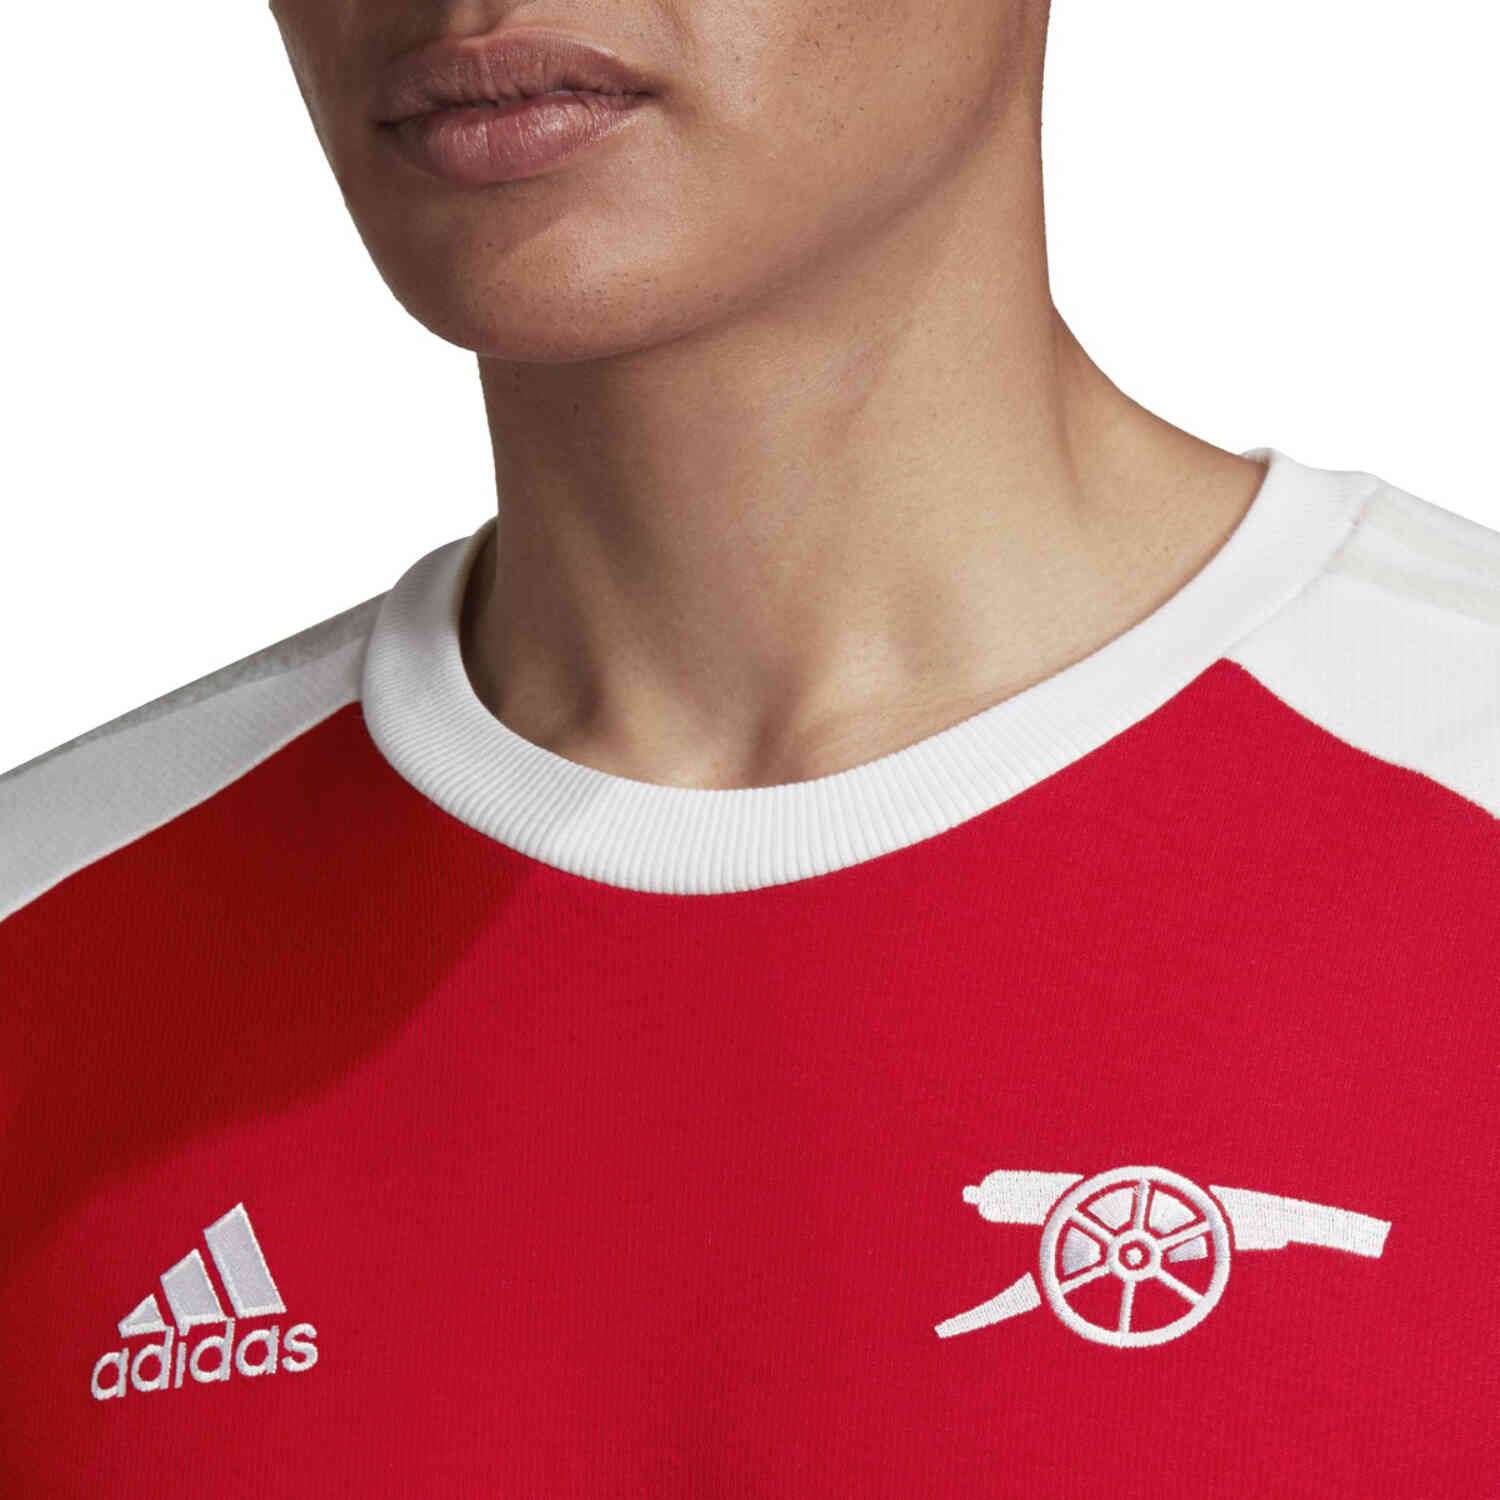 adidas Arsenal Icons Tee - Scarlet/White - SoccerPro